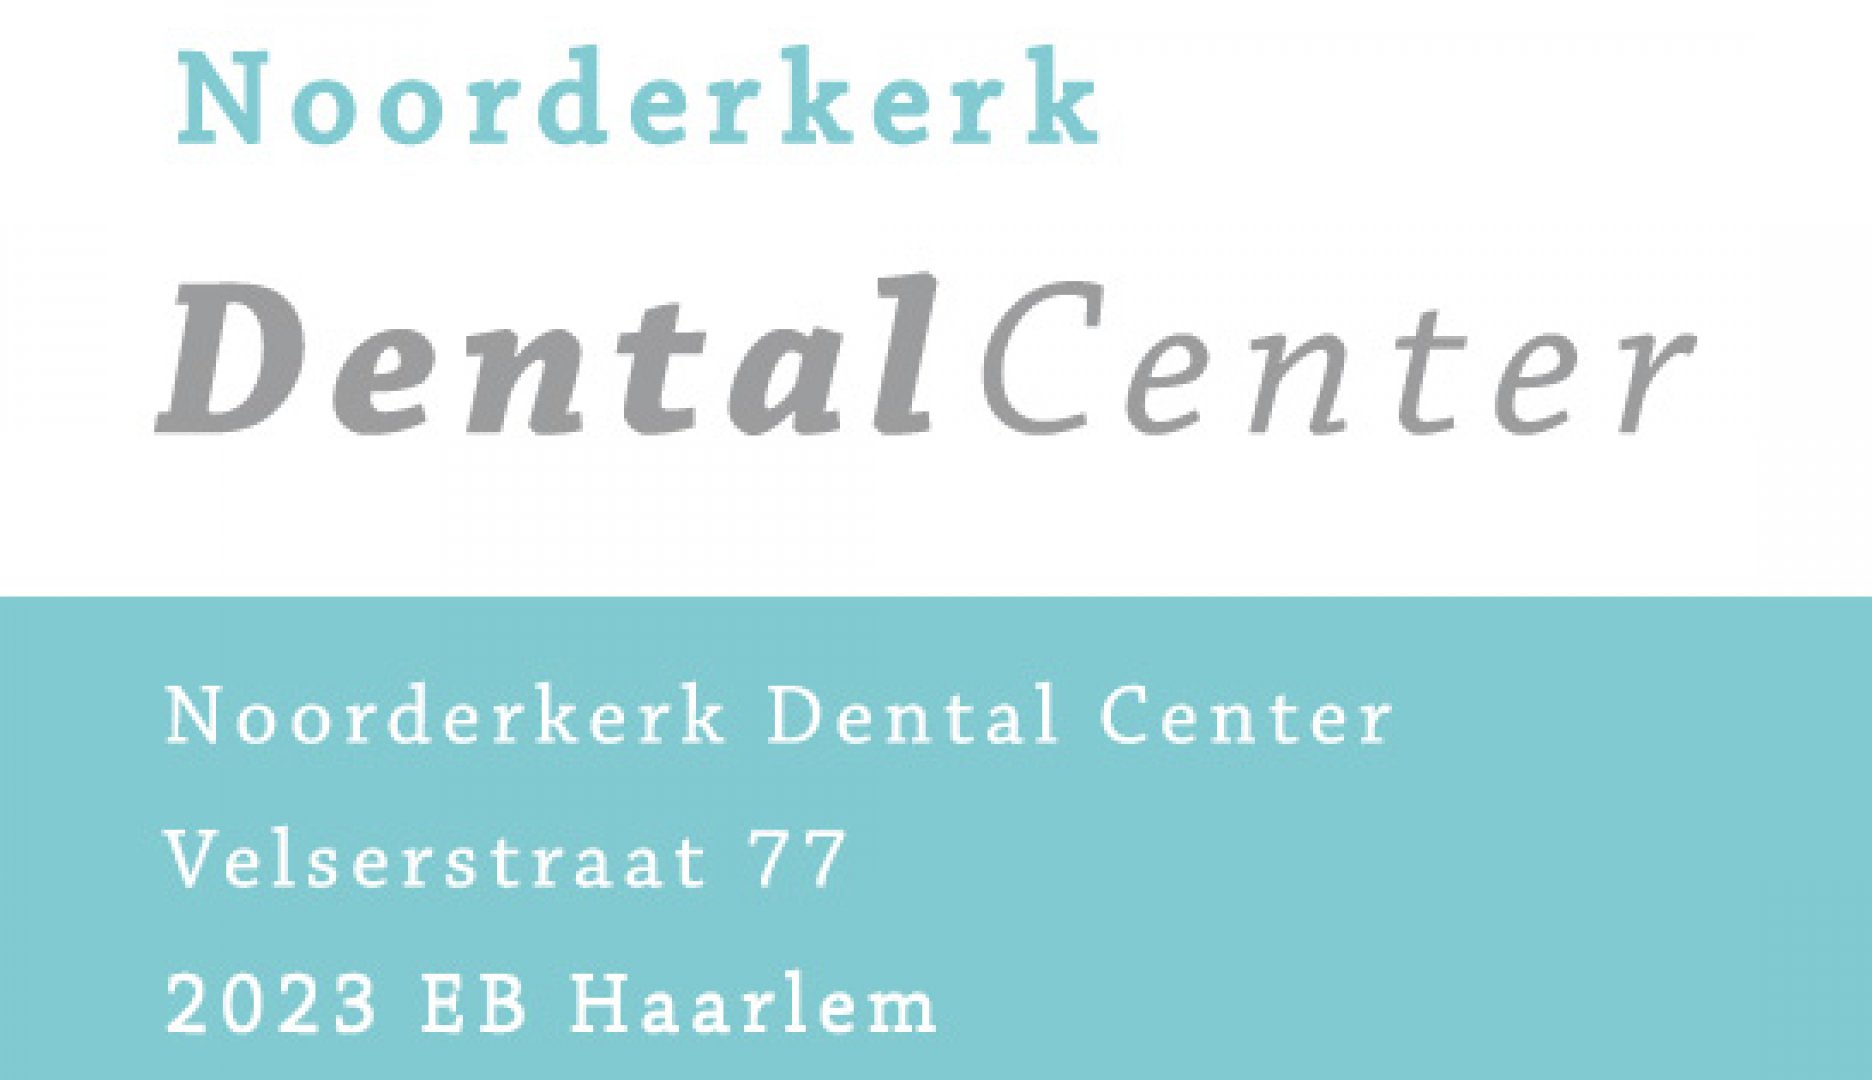 Noorderkerk Dental Center